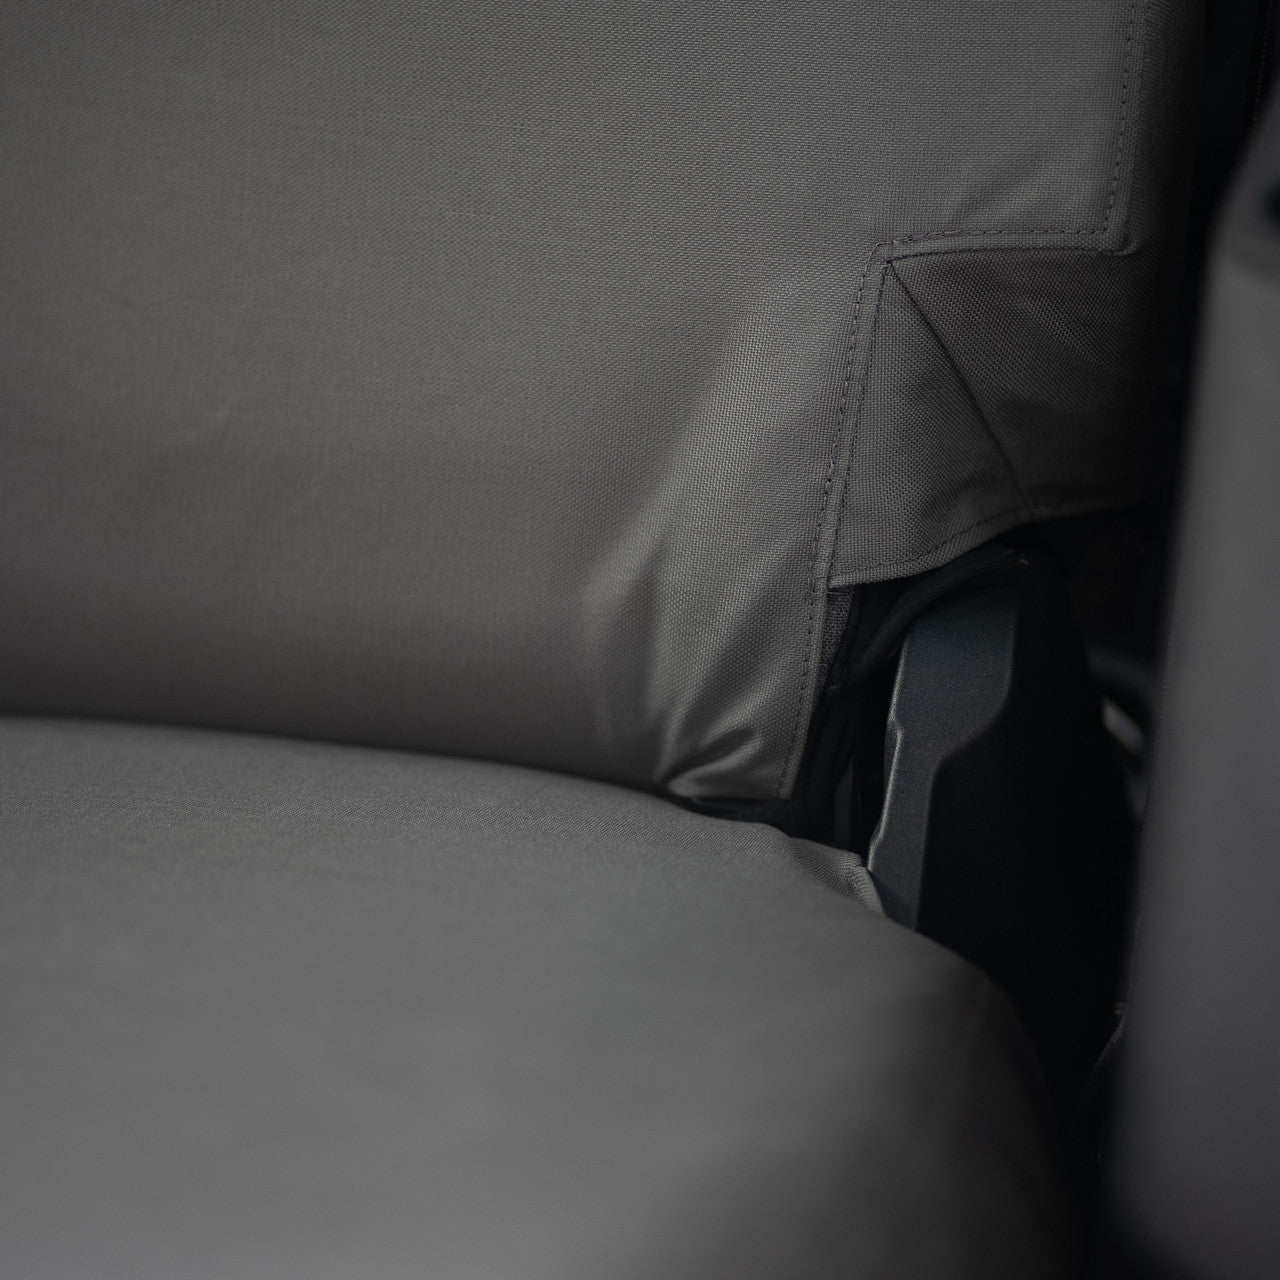 Seat bottom detail showing corner of seat